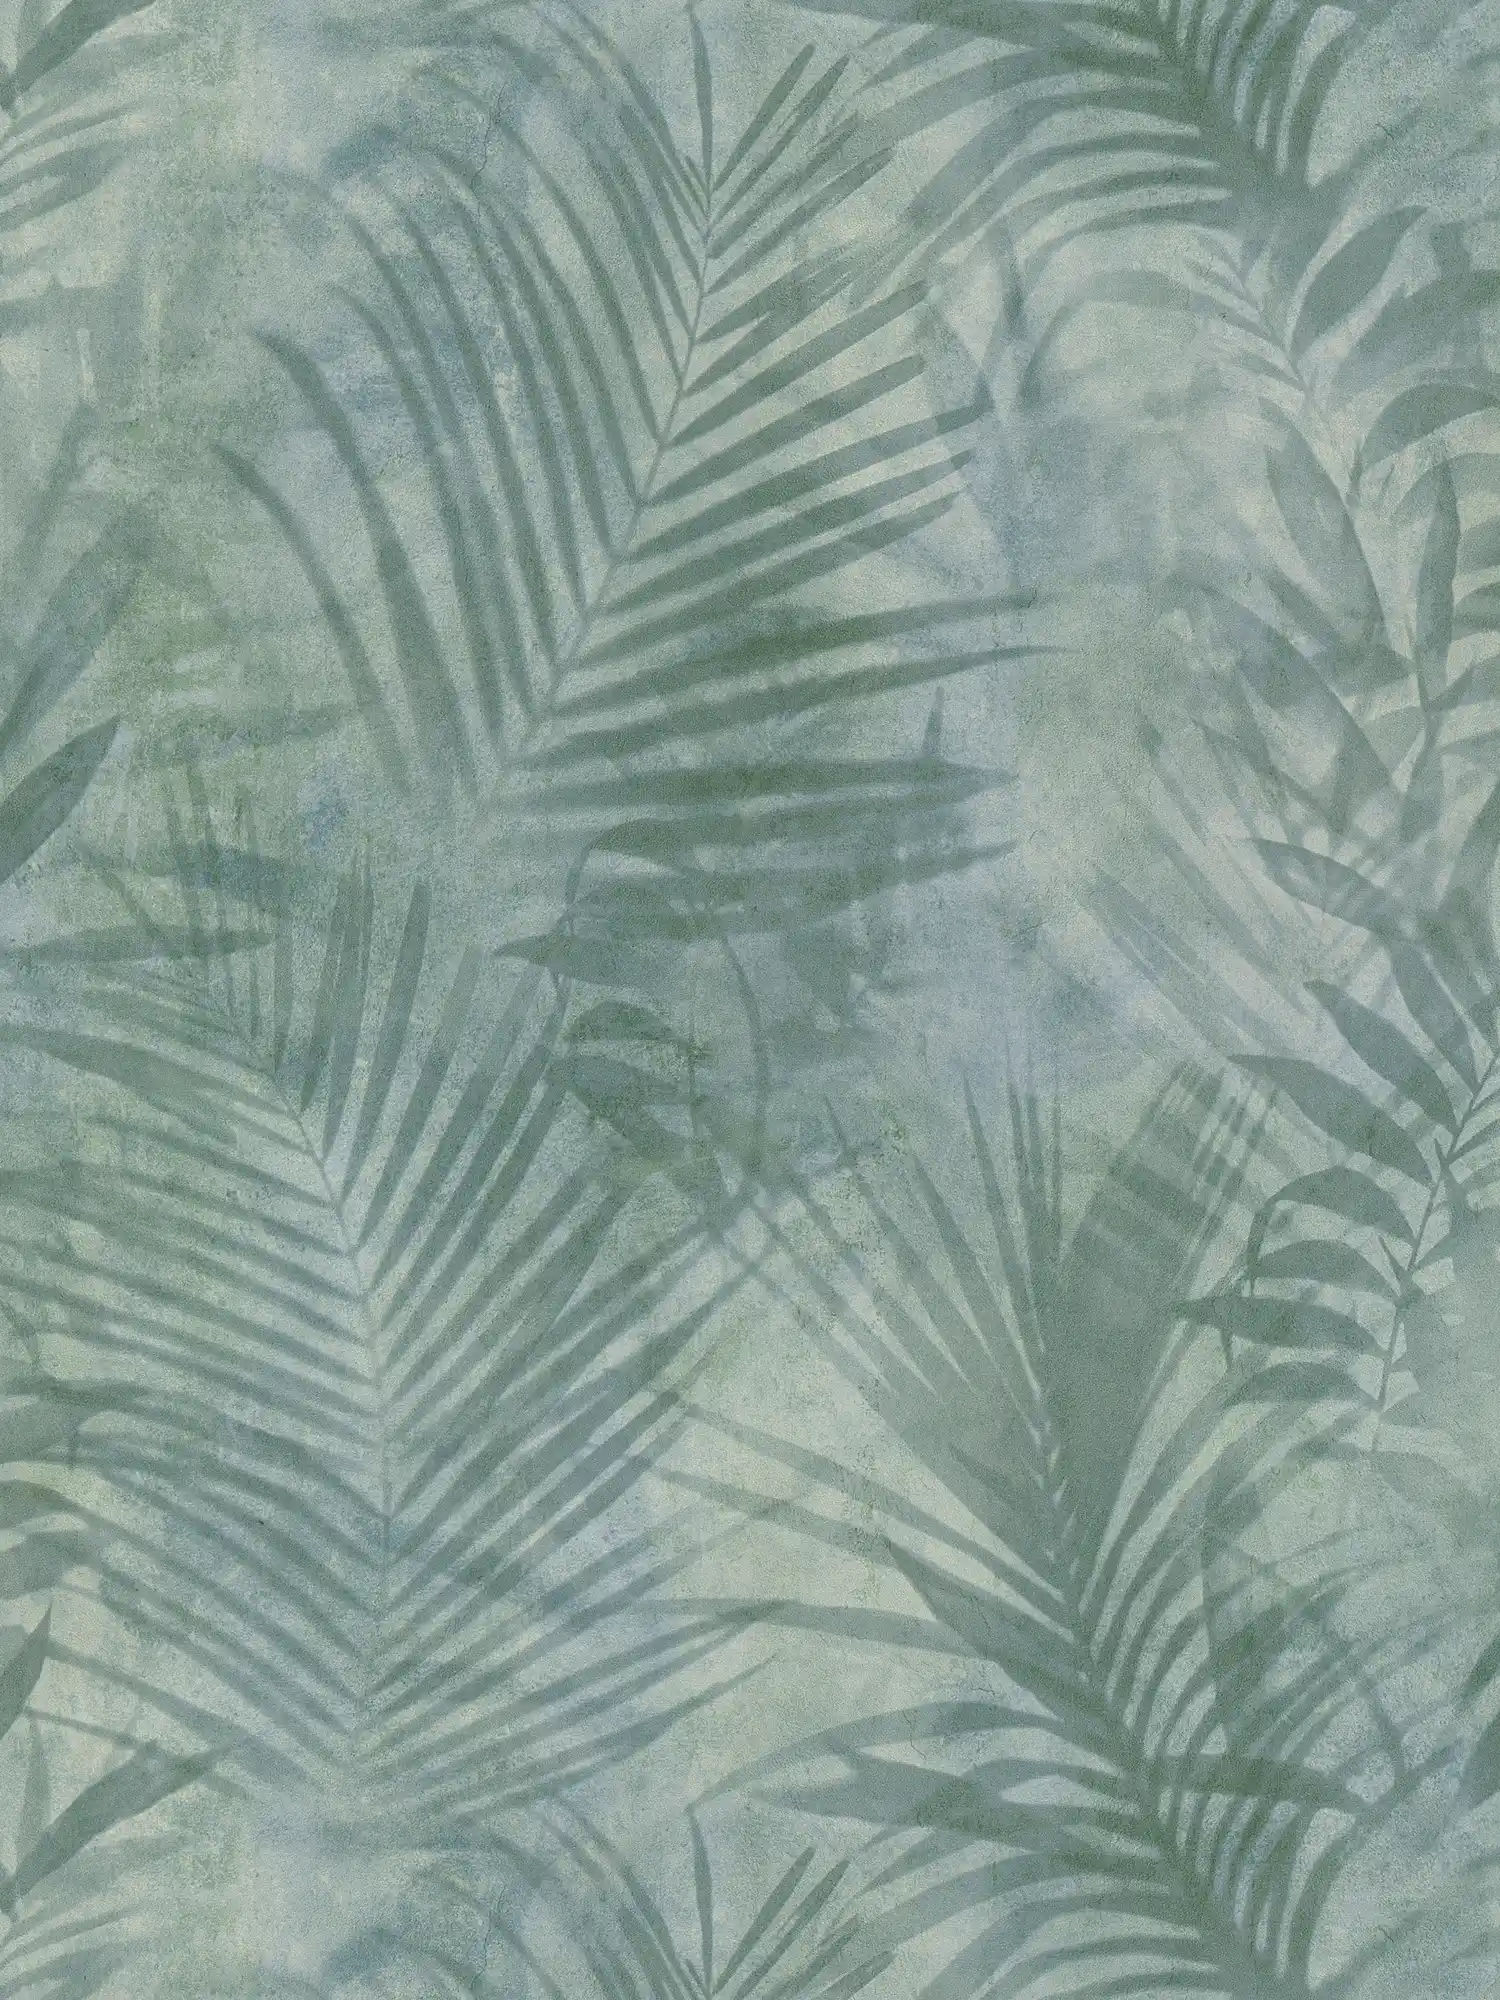 behang palmboom patroon in linnen look - groen, blauw, grijs
